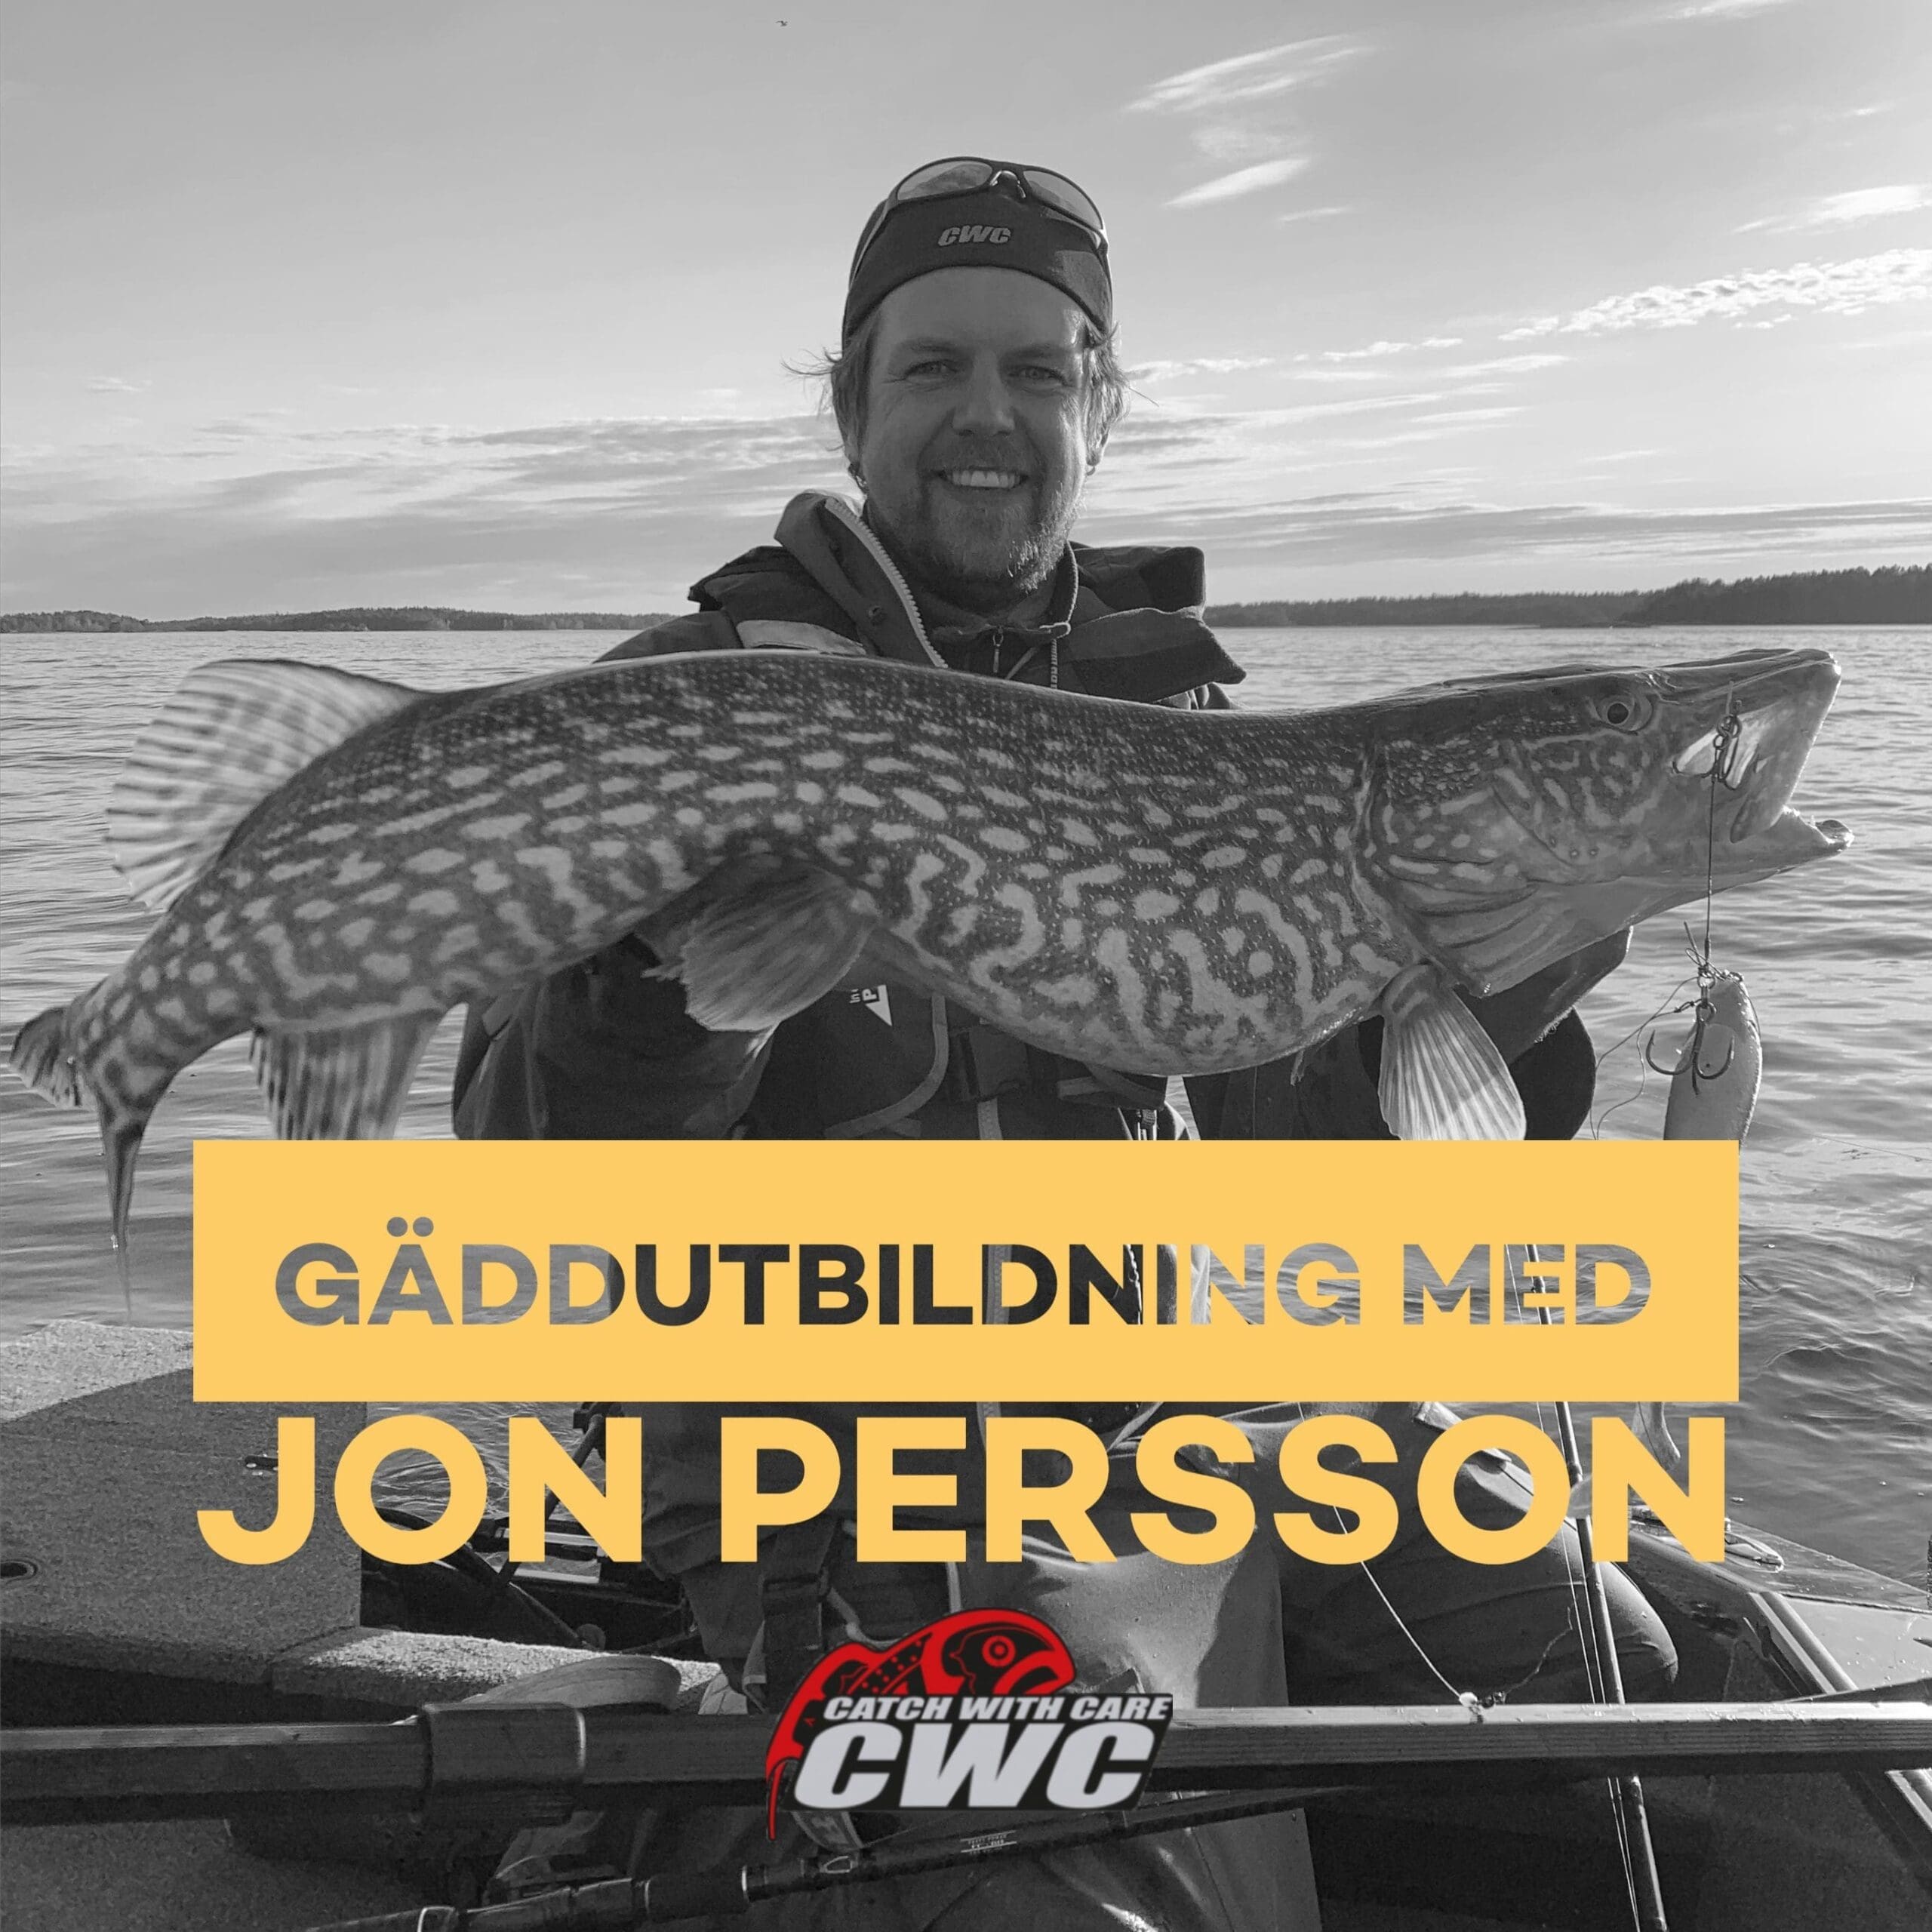 Gäddutbildning med Jon Persson från CWC Fishing team